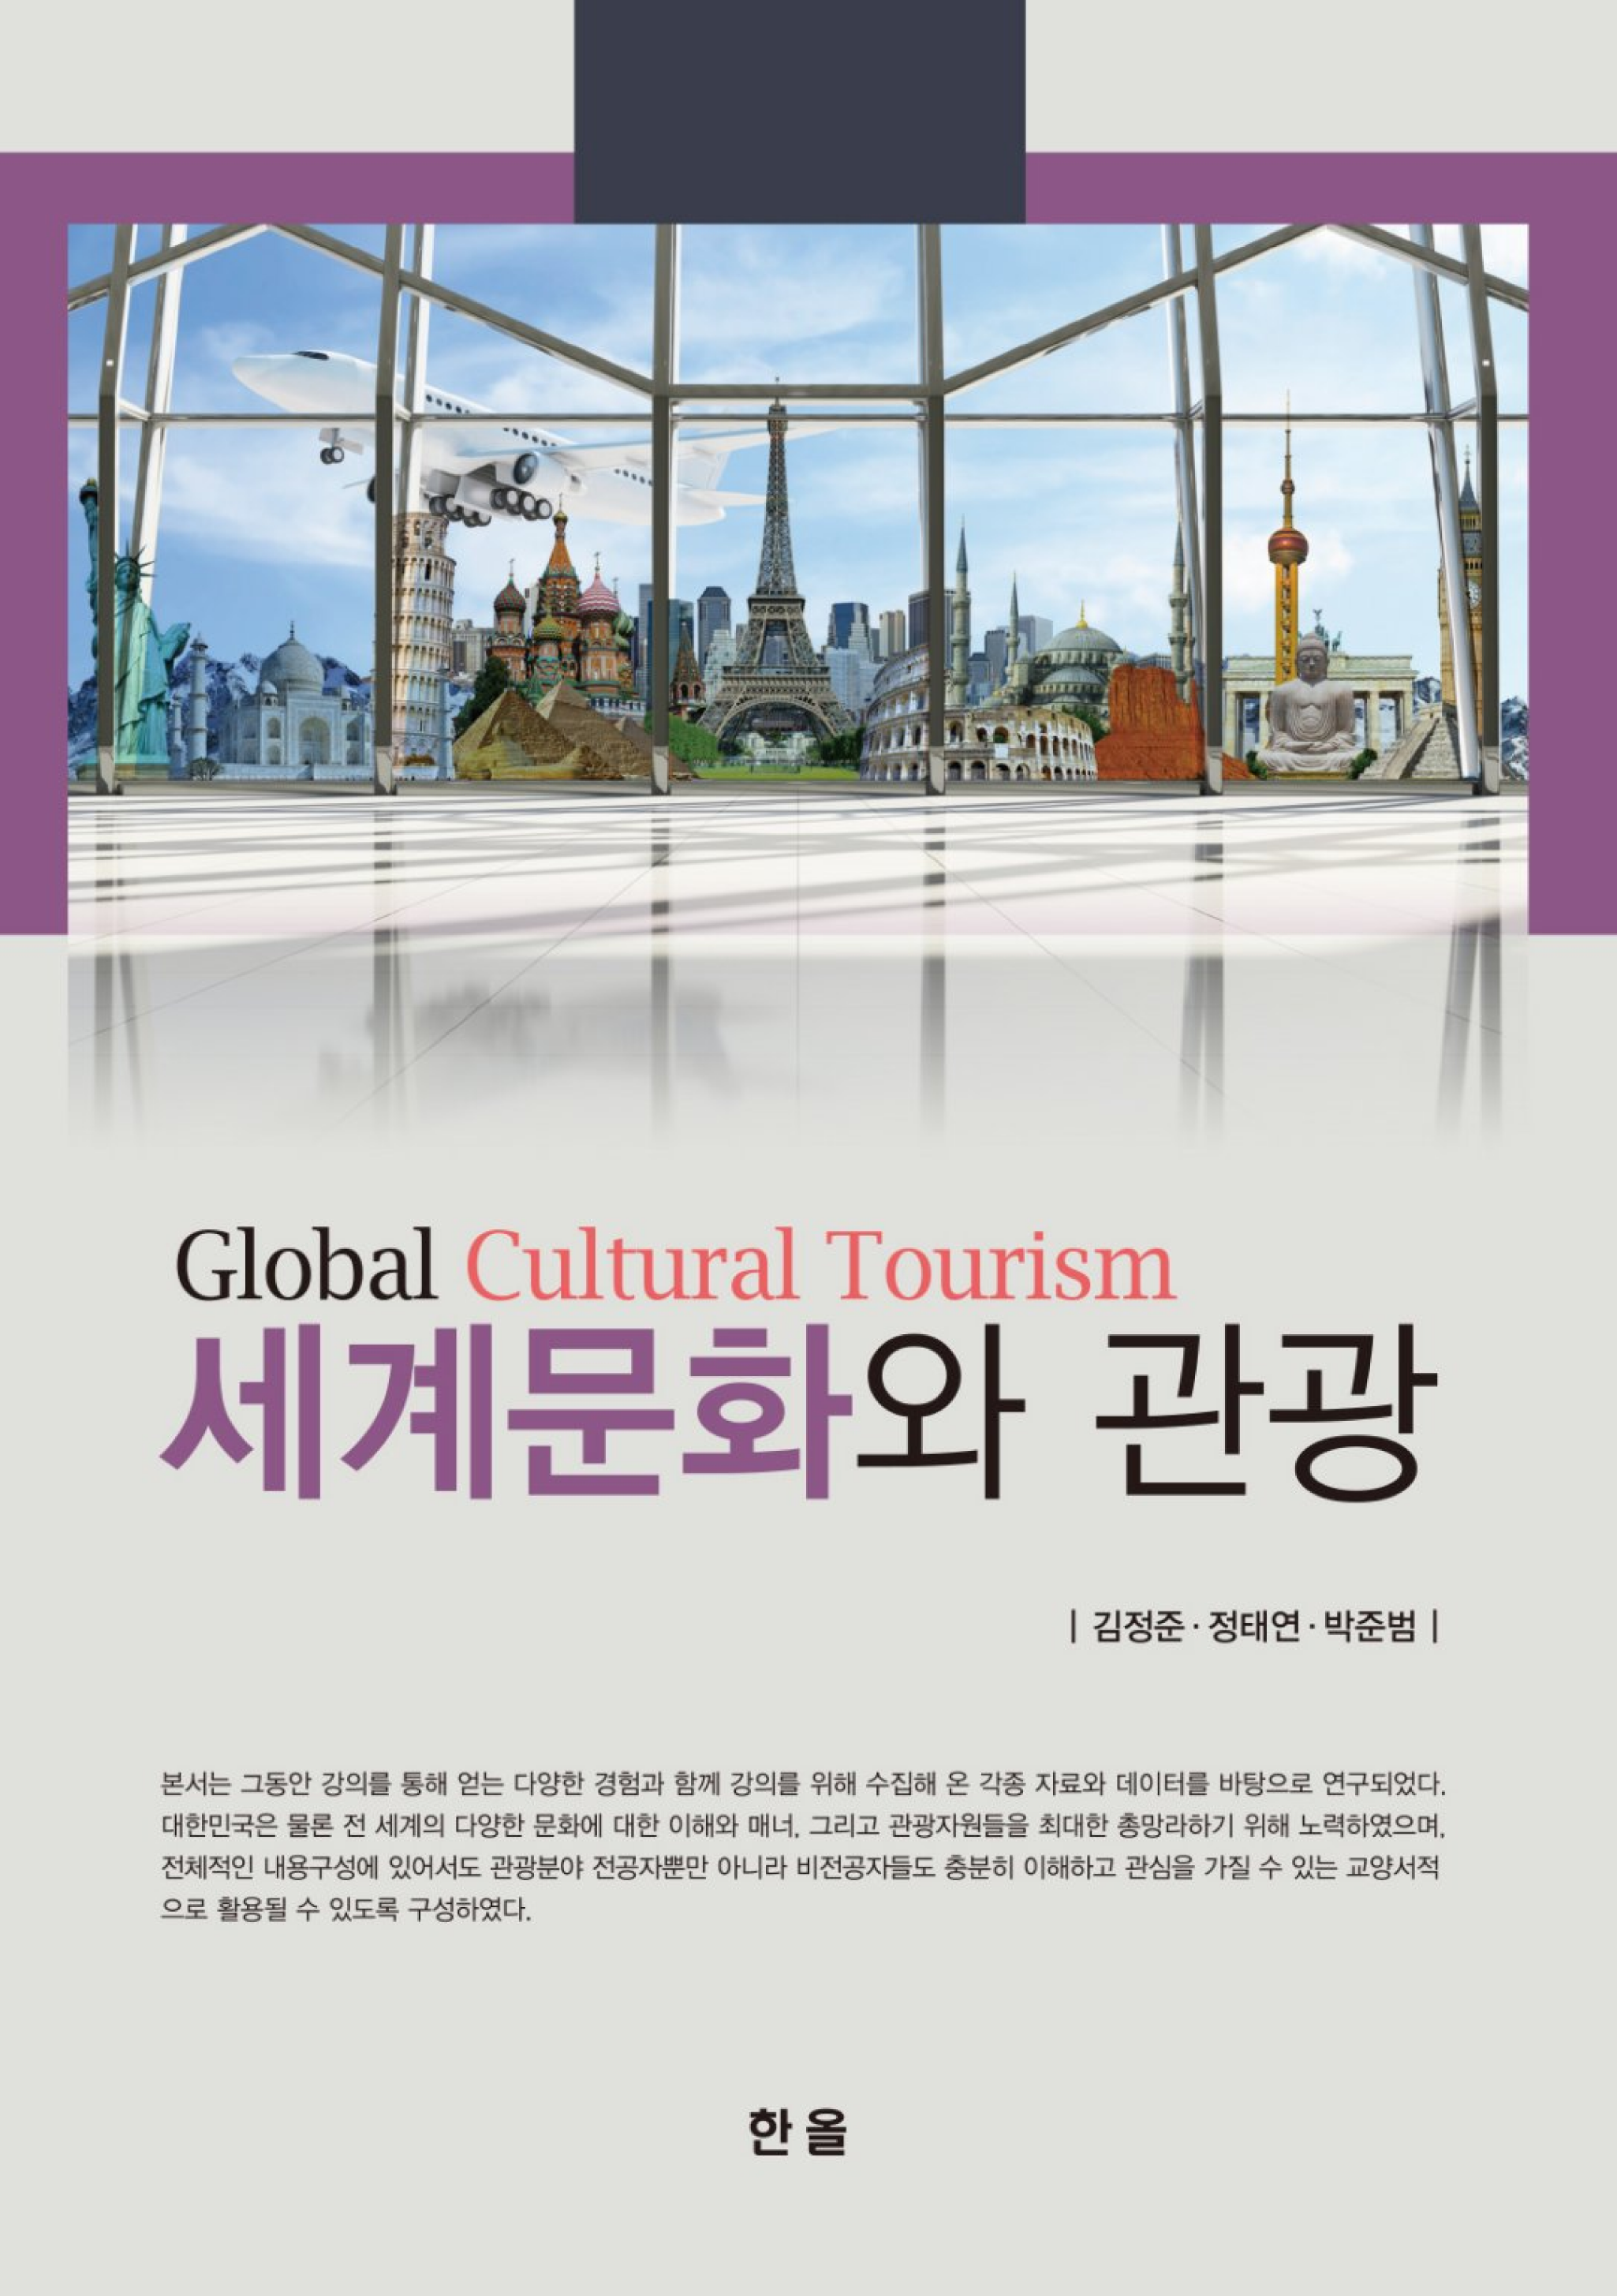 세계문화와 관광